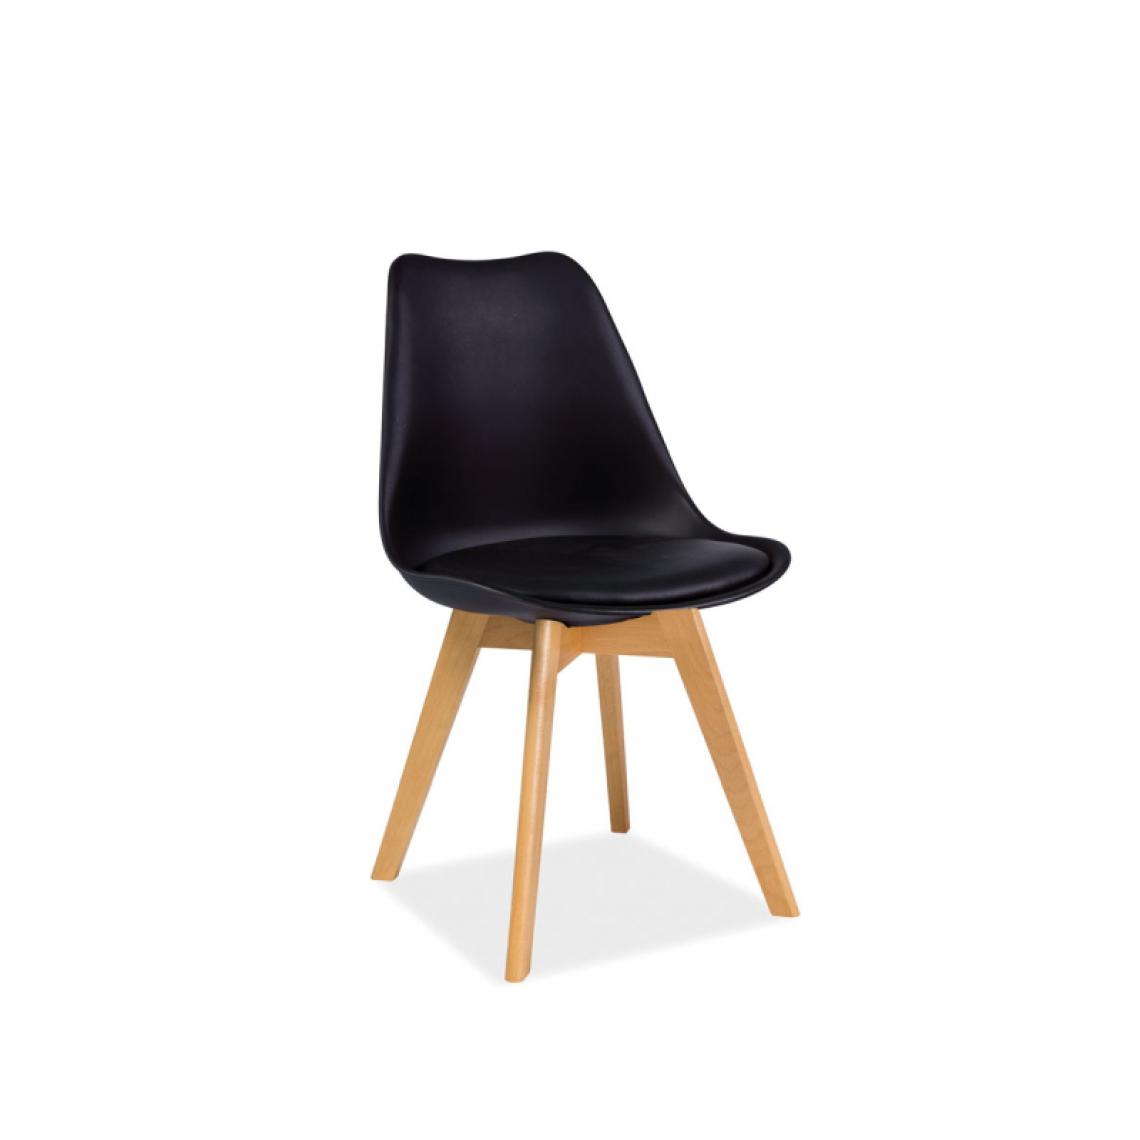 Hucoco - KRIZ | Chaise style scandinave salle à manger/salon/bureau | Dimensions : 83x49x43 cm | Assise en cuir écologique | Base en bois - Noir - Chaises